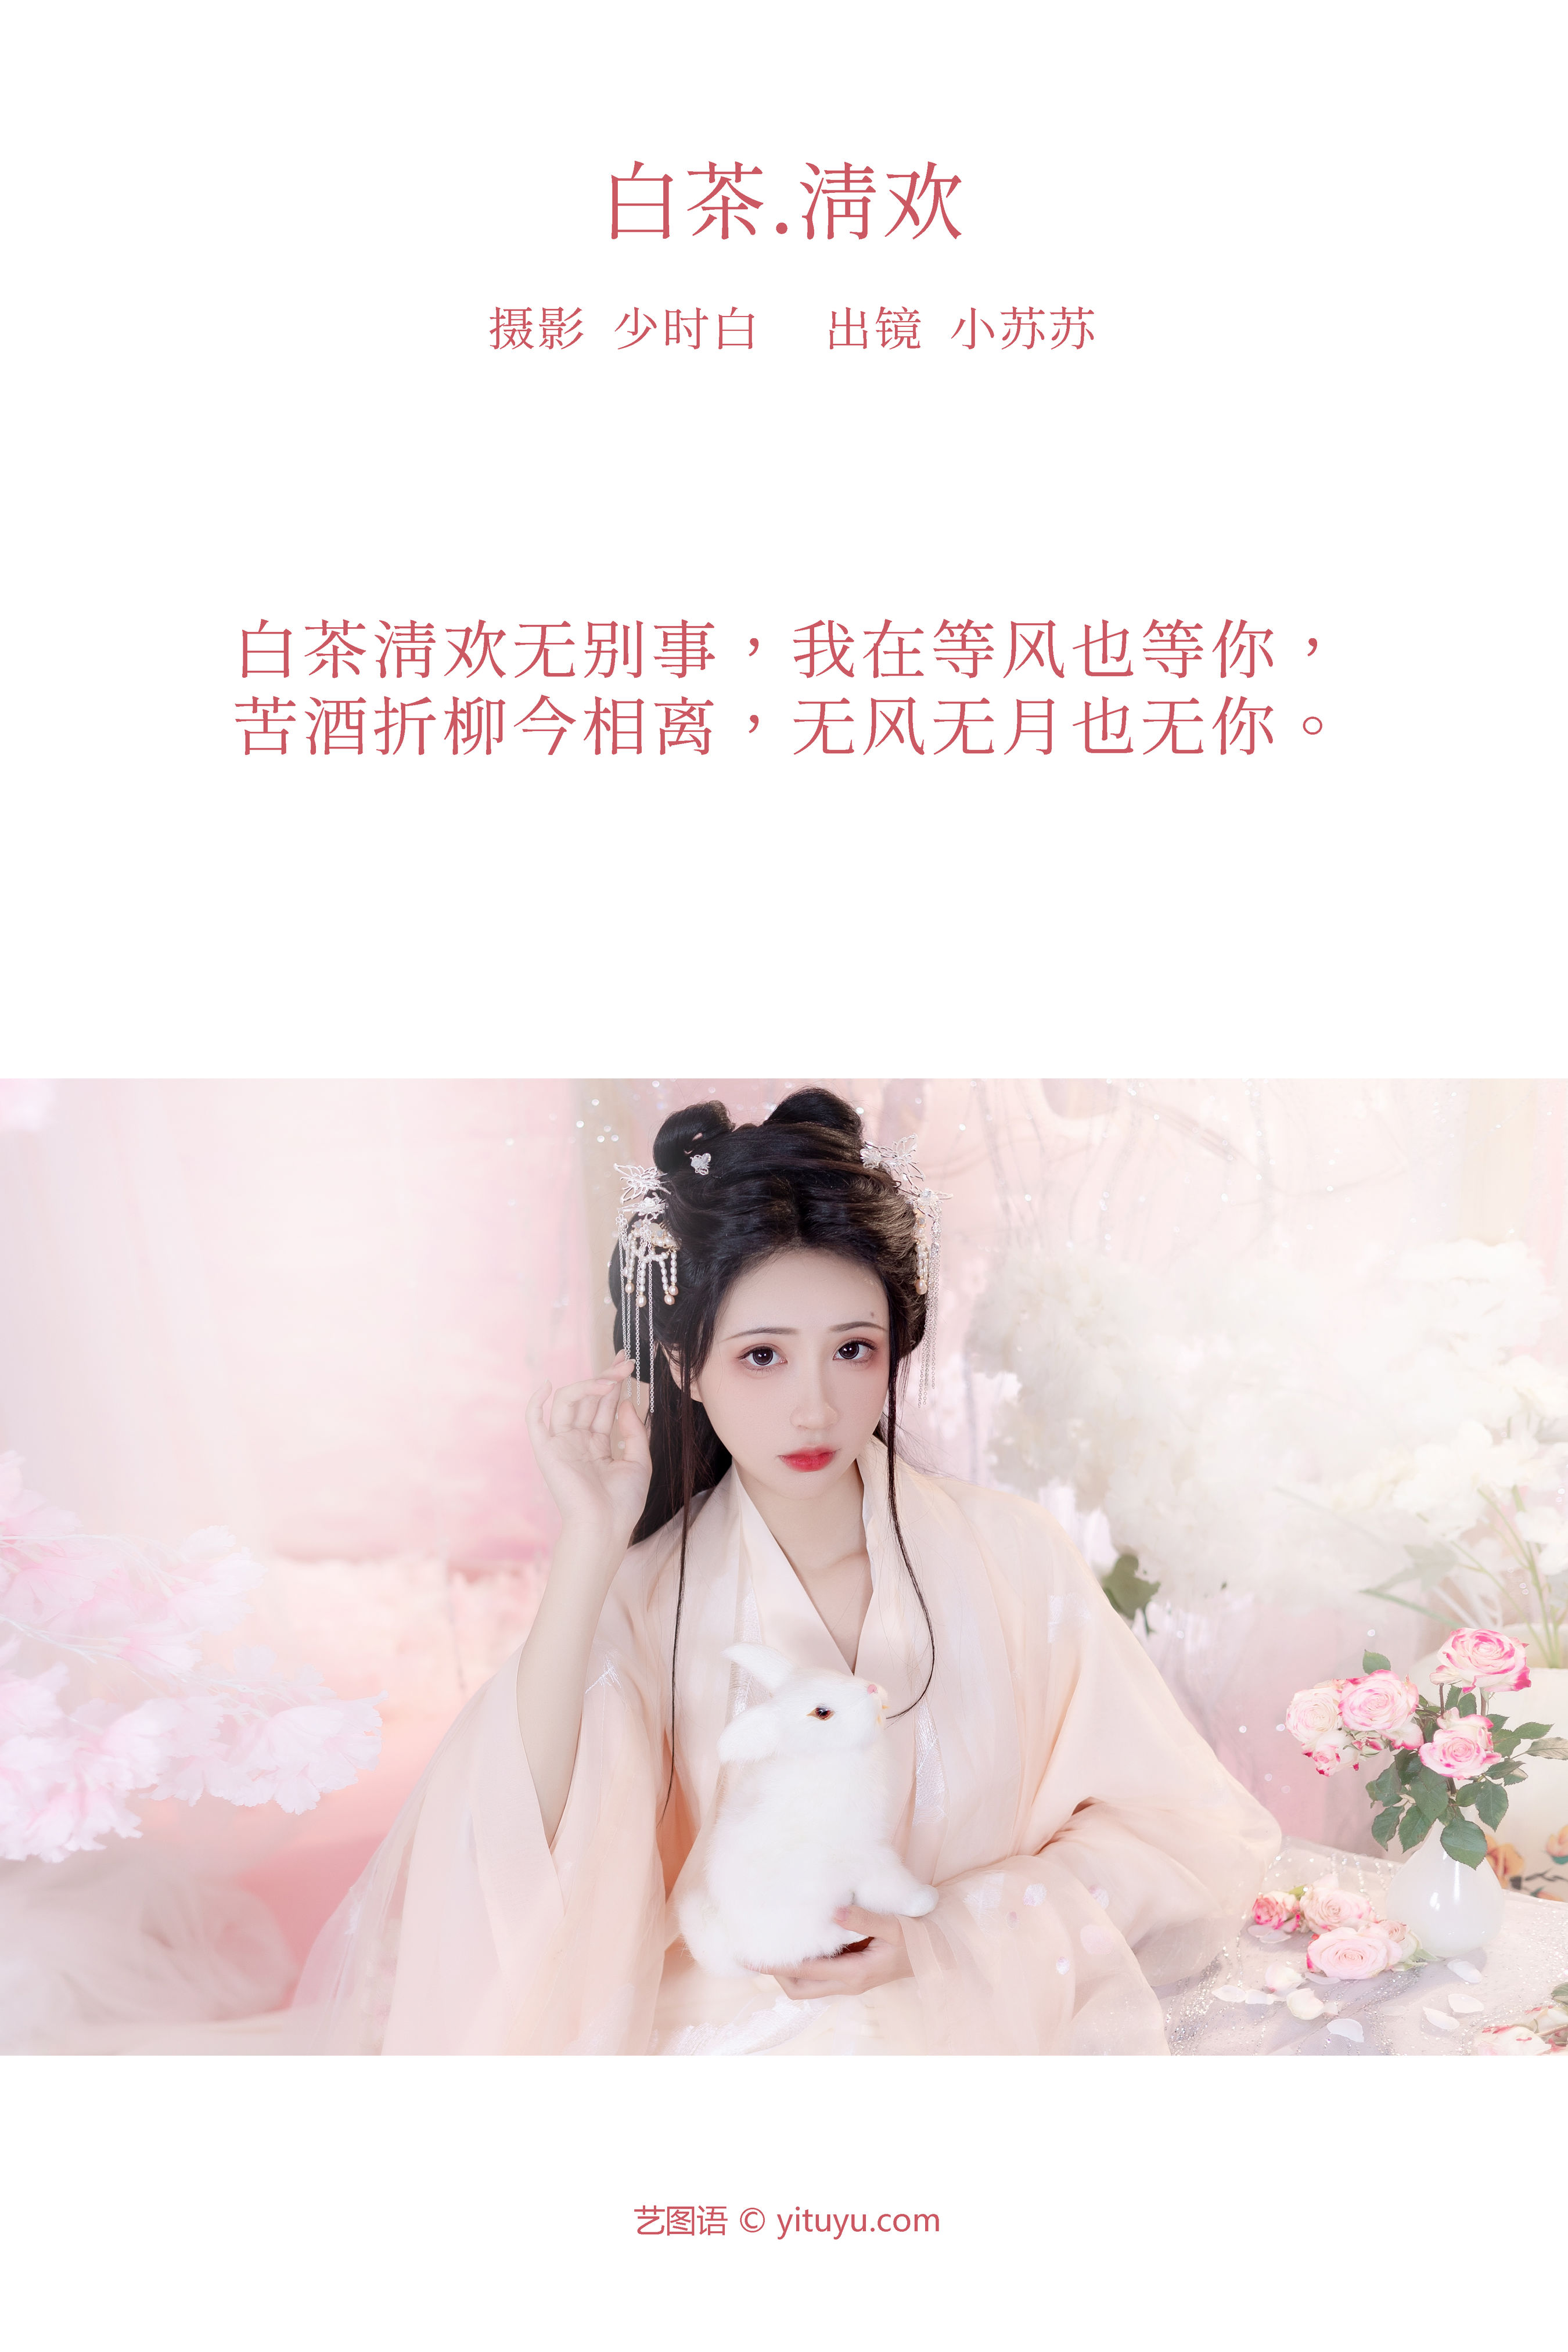 白茶清欢 汉服 古装 少女 人像 美女 模特&YiTuYu艺图语-2